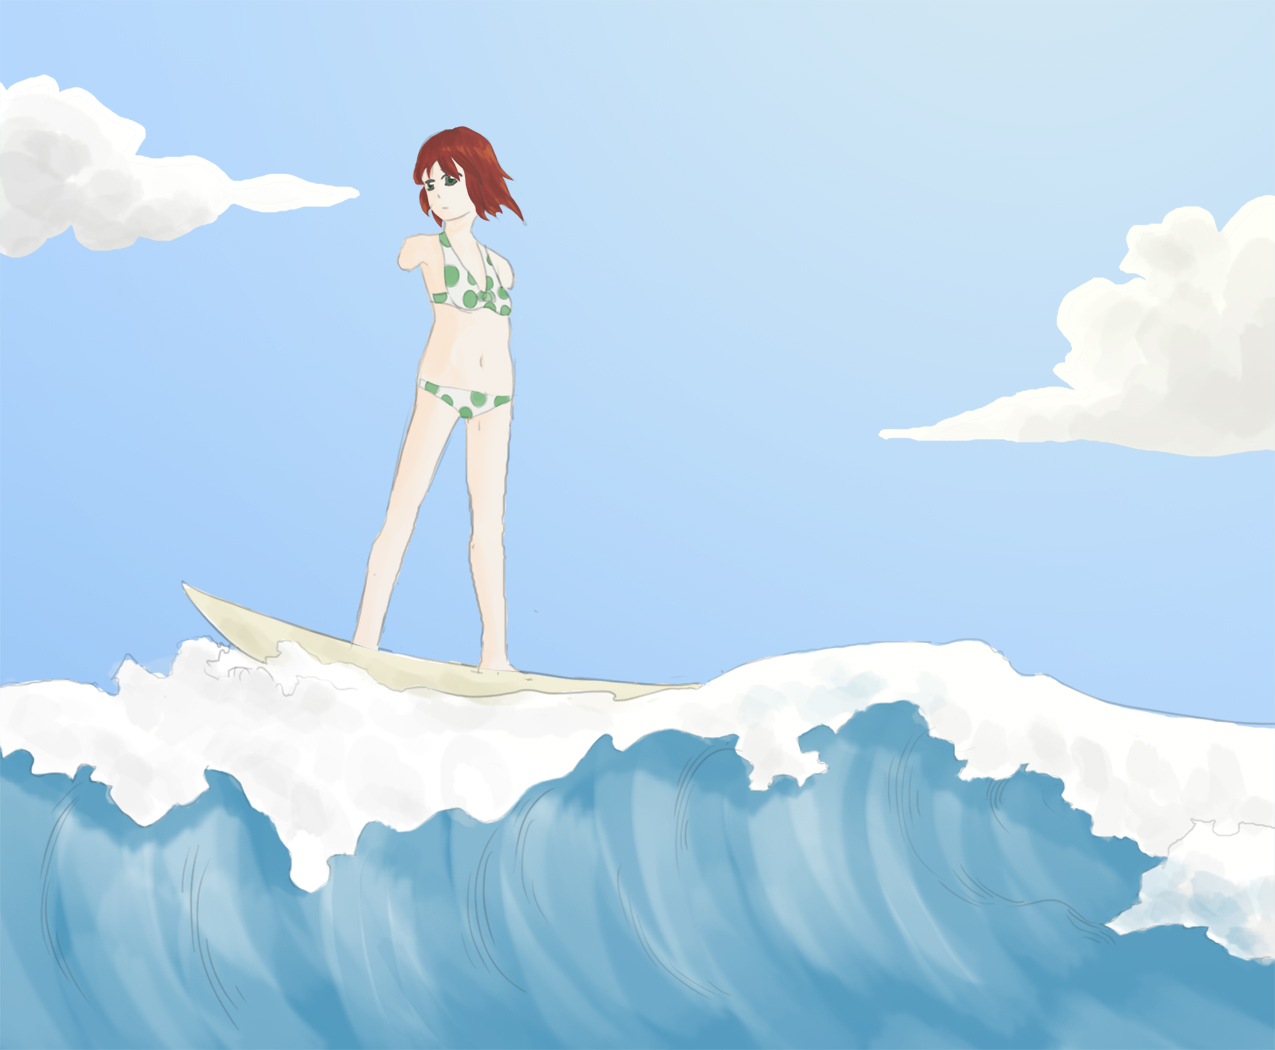 rin surf.jpg